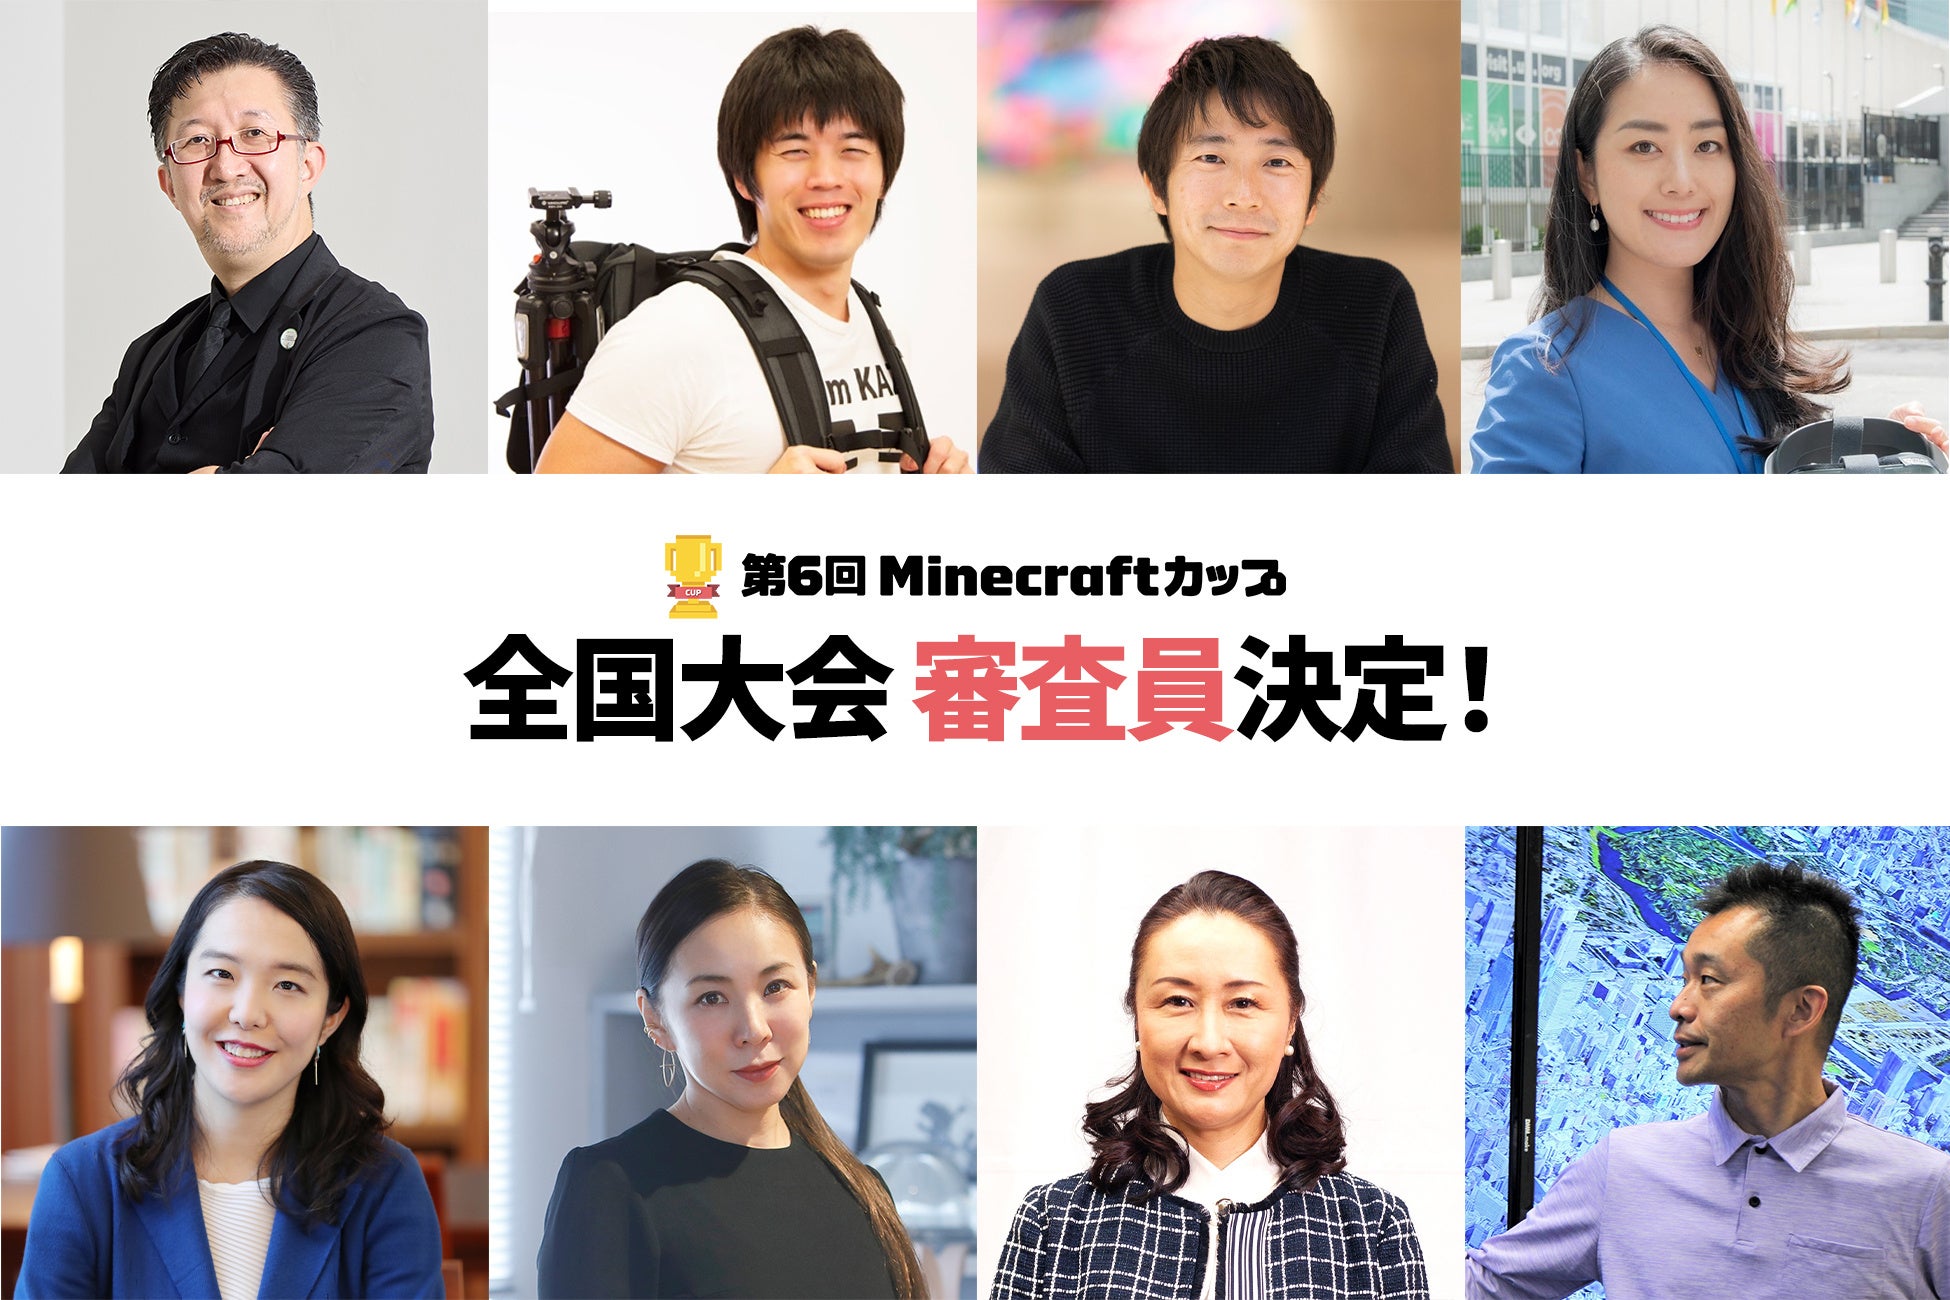 「EXPO2025 大阪・関西万博」プロデューサー、パビリオン建築家が子ども達のMinecraft作品を審査。第6回Minecraftカップ全国大会審査員にマイクラ・教育・建築各界の著名人8名が決定！